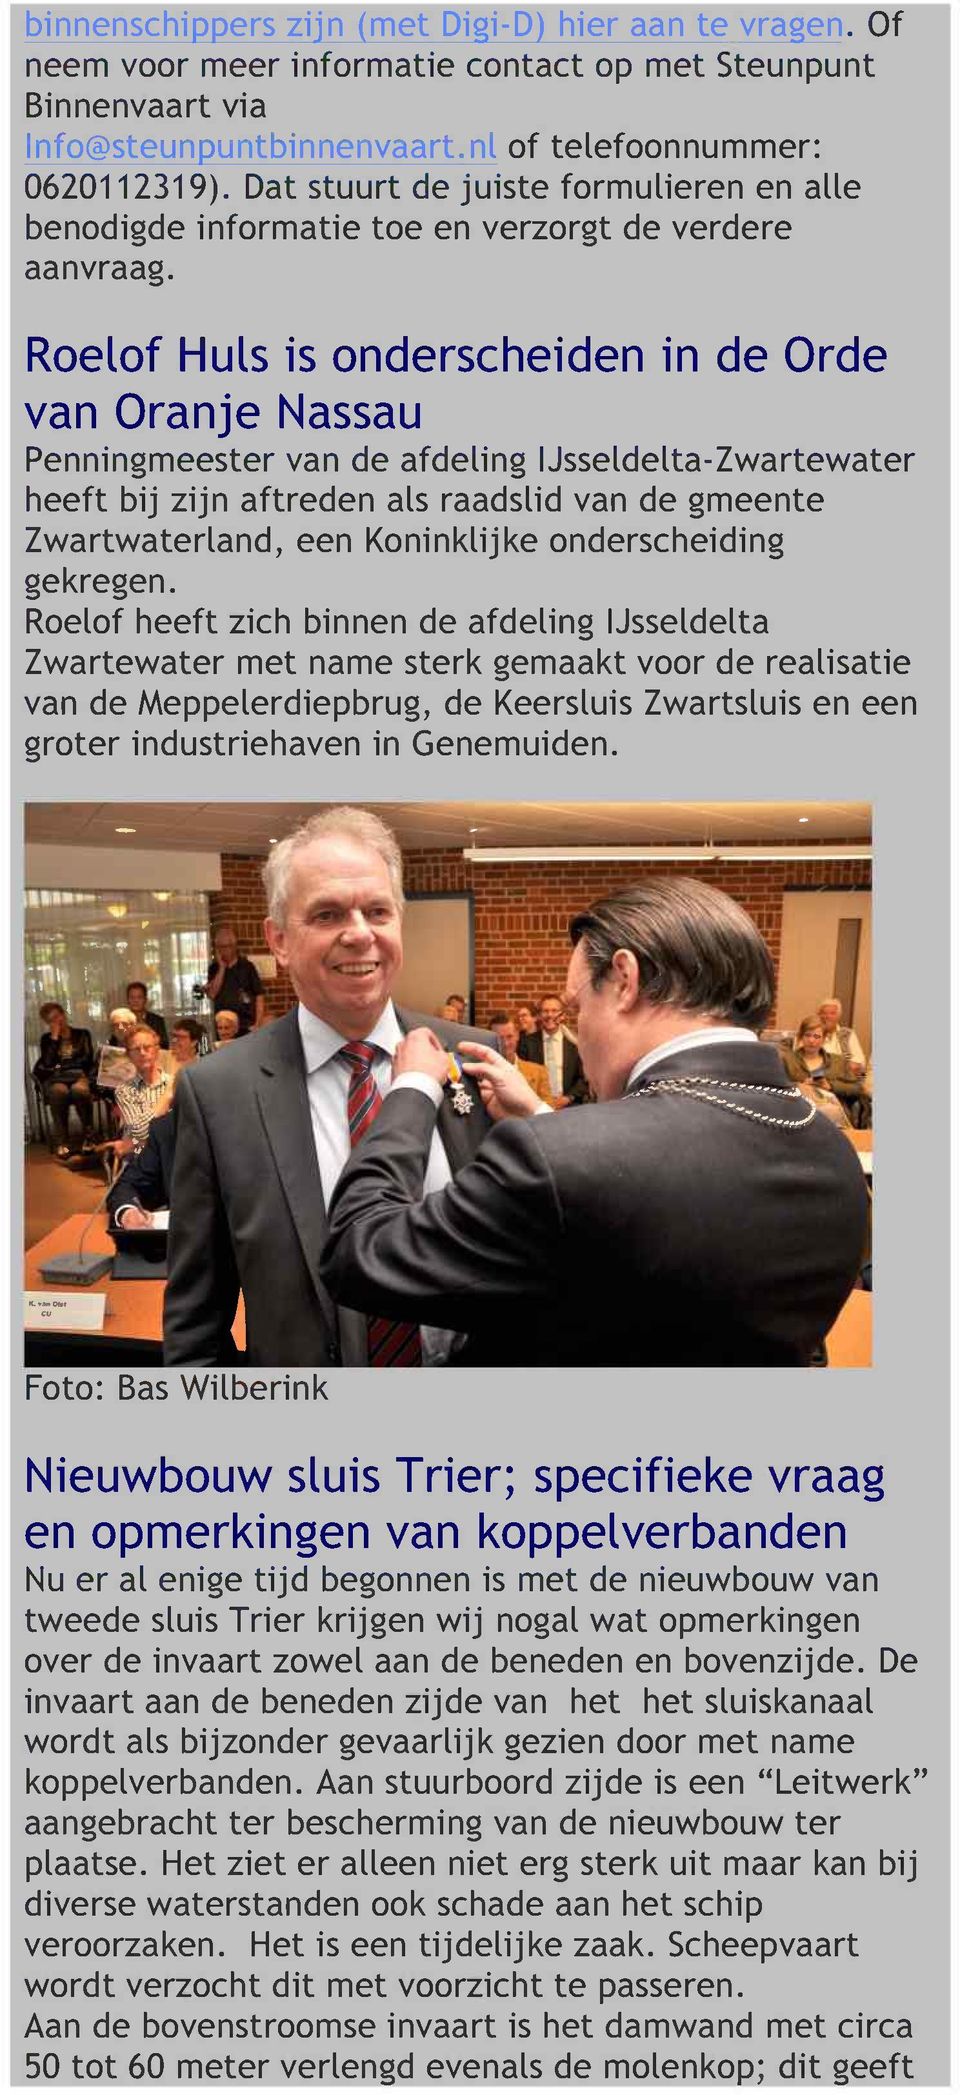 Roelof Huls is onderscheiden in de Orde van Oranje Nassau Penningmeester van de afdeling IJsseldelta-Zwartewater heeft bij zijn aftreden als raadslid van de gmeente Zwartwaterland, een Koninklijke